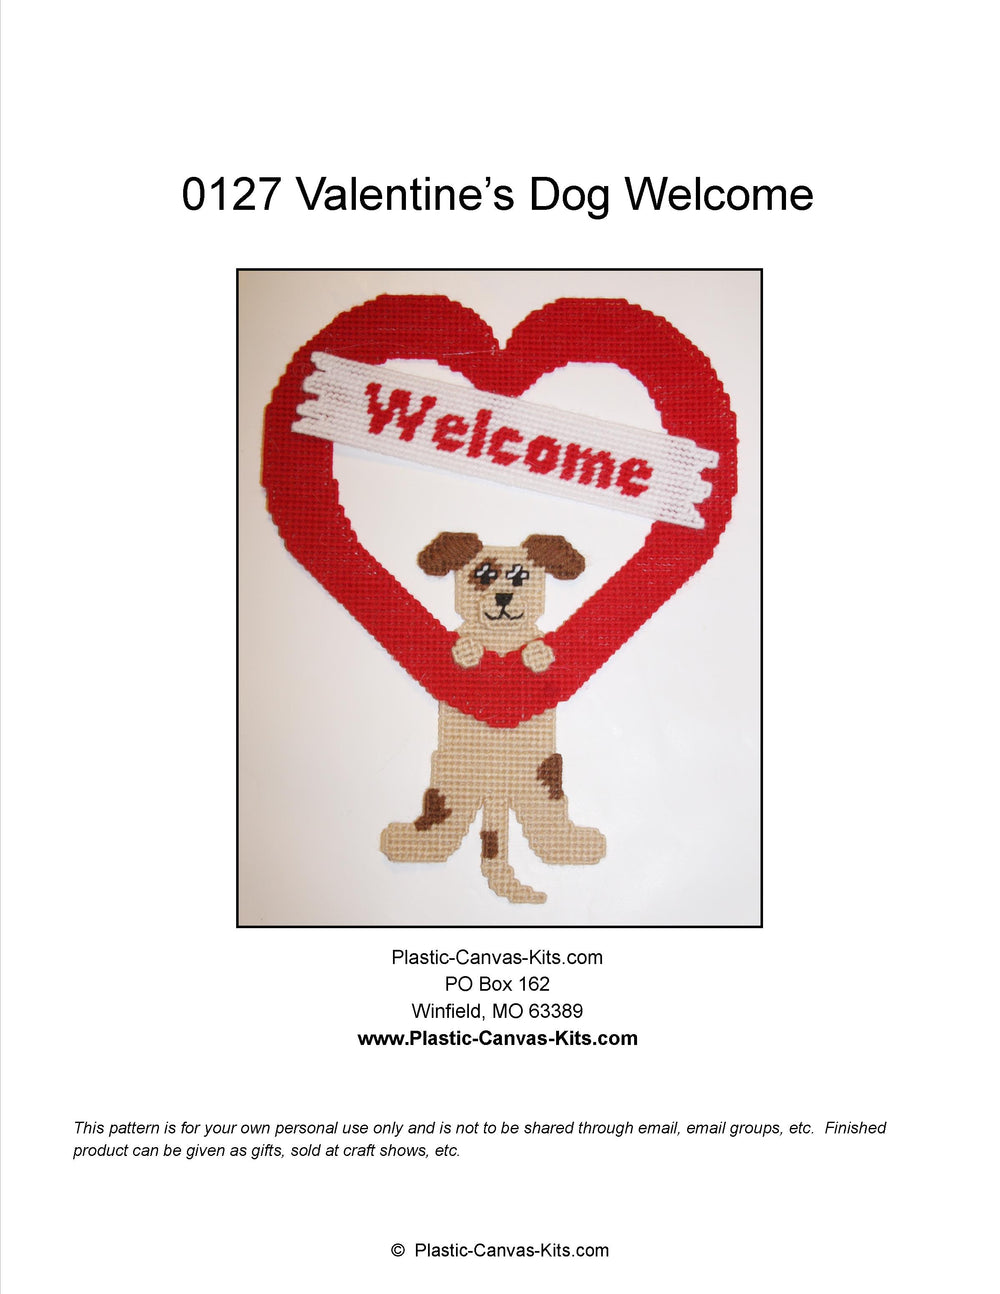 Valentine's Welcome Dog